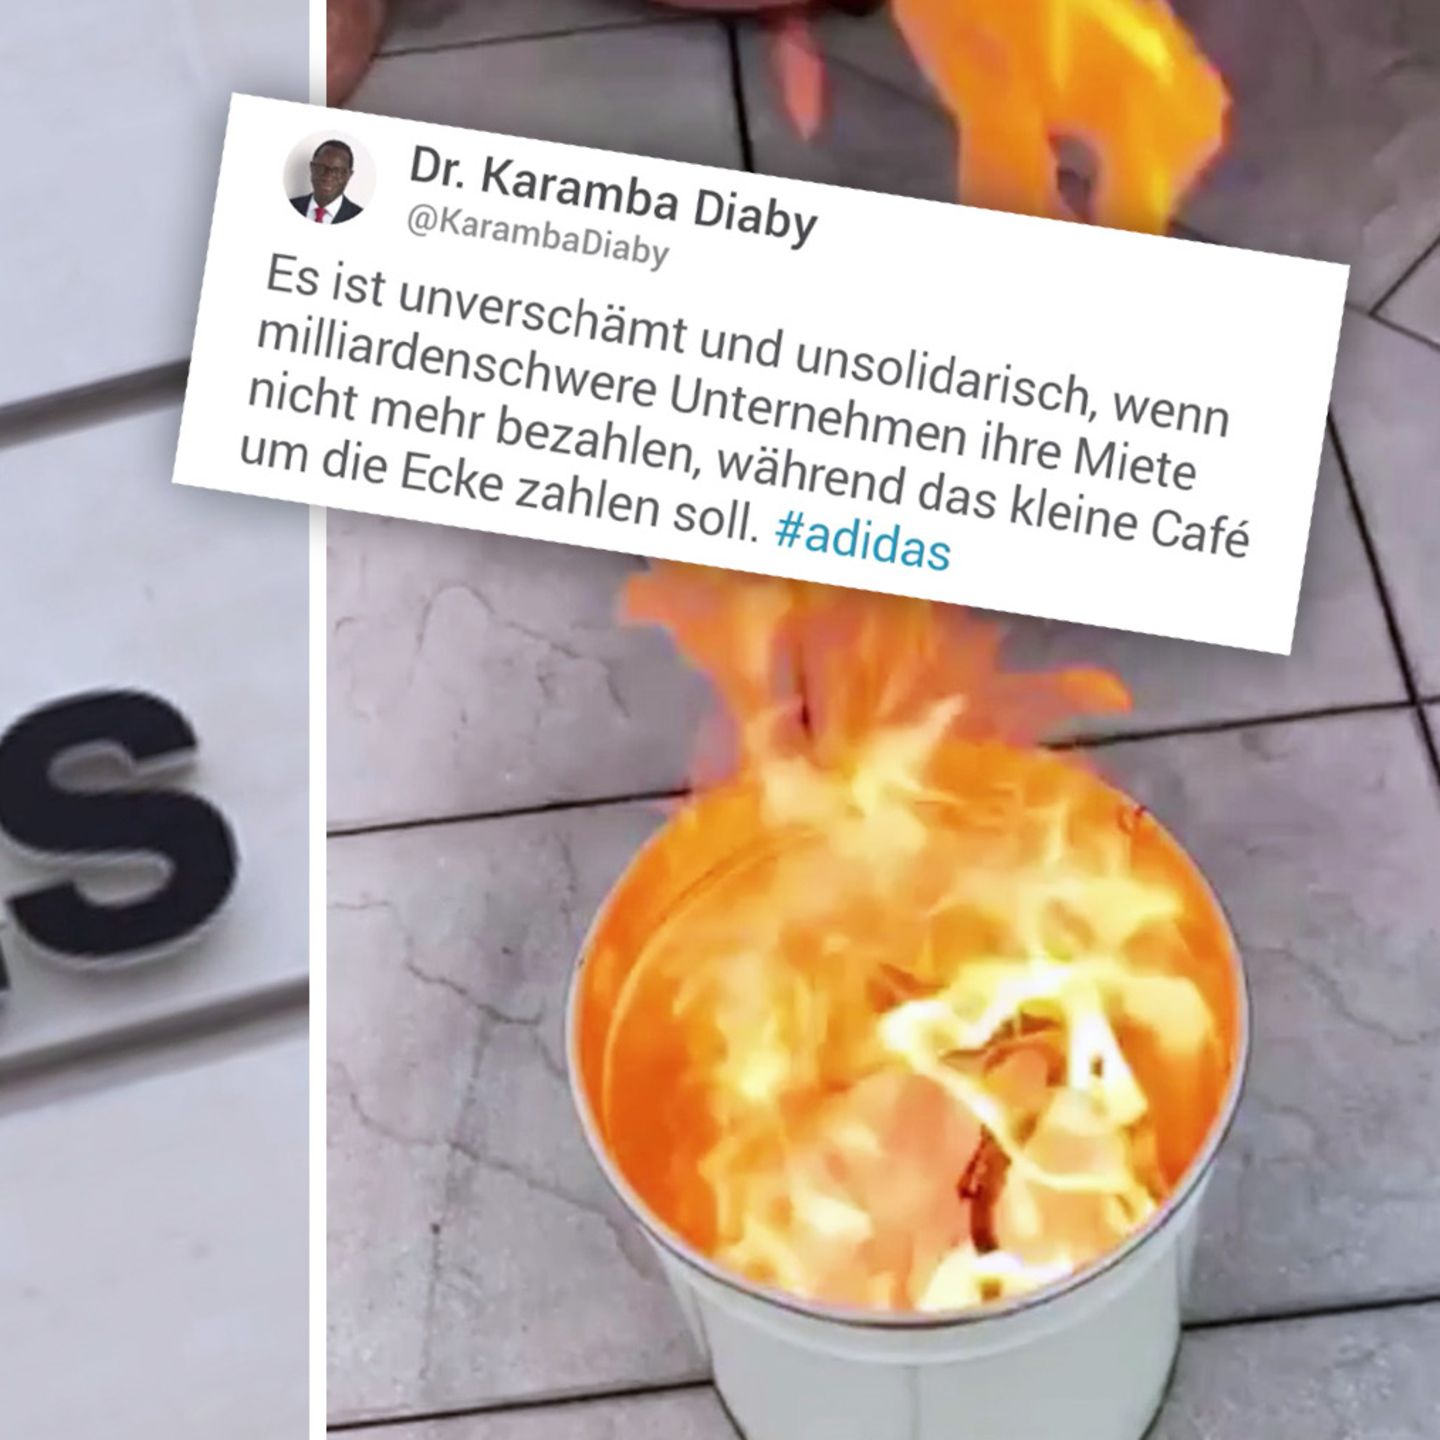 Adidas Politiker Reagieren Mit Kritik Einer Sogar Mit Feuer Stern De